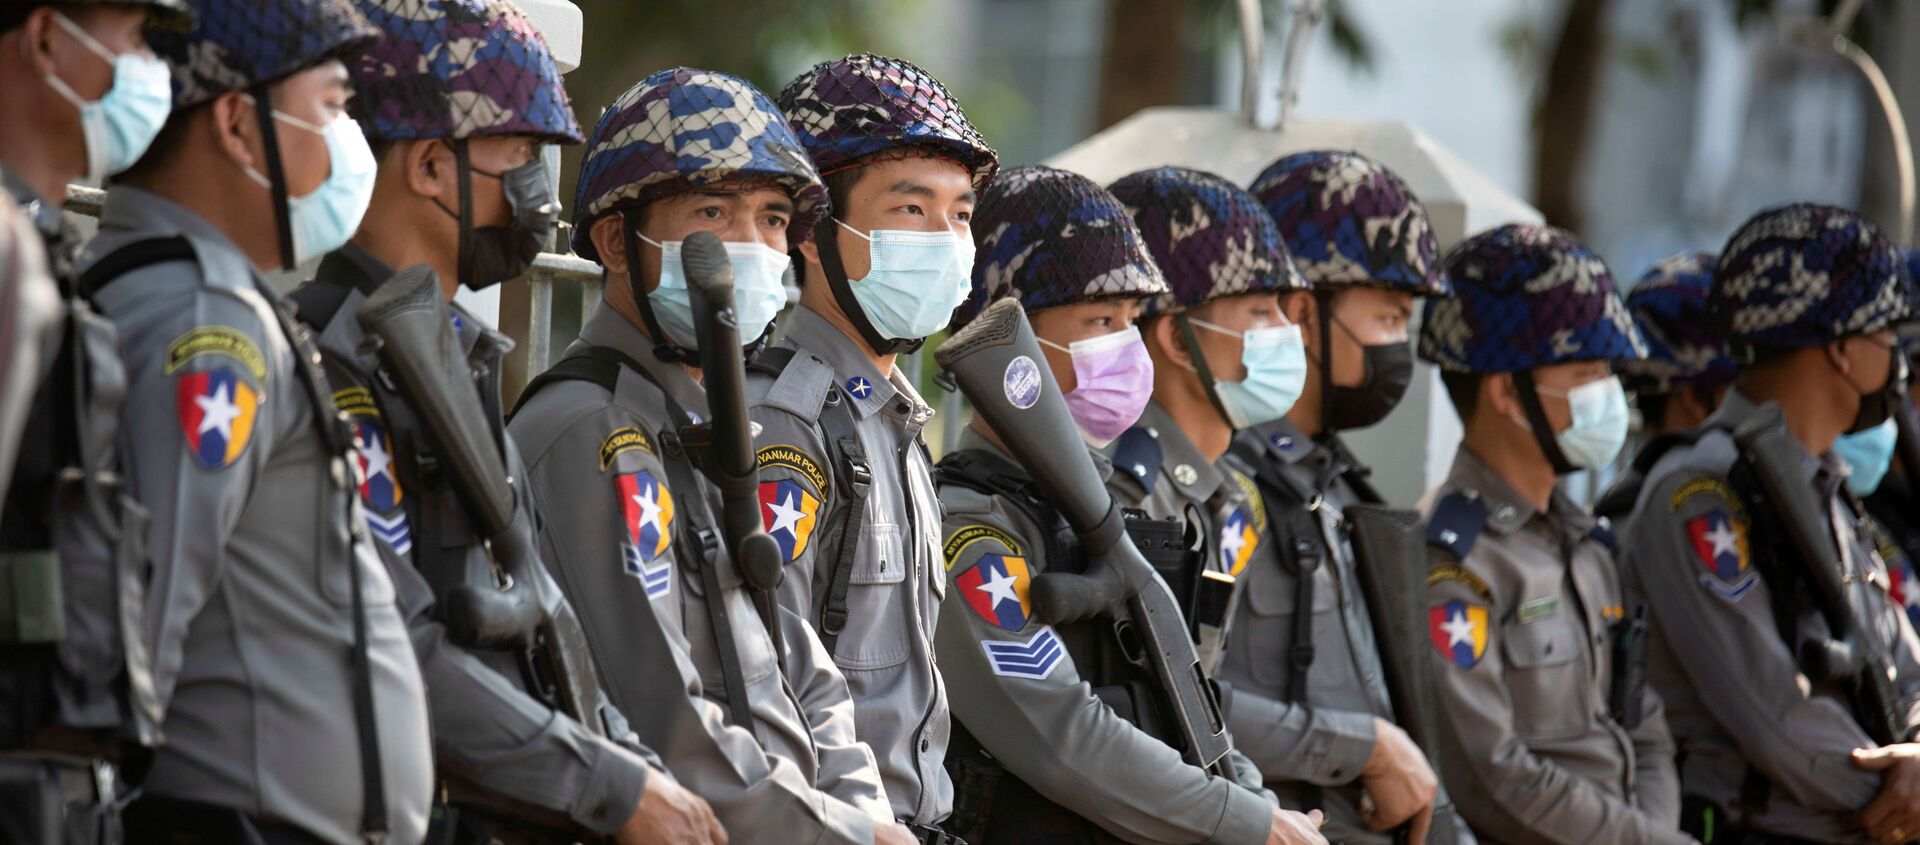 Các nhân viên cảnh sát chờ đợi các cuộc biểu tình chống đảo chính ở Yangon, Myanmar ngày 4 tháng 2 năm 2021. REUTERS / Stringer - Sputnik Việt Nam, 1920, 12.02.2021